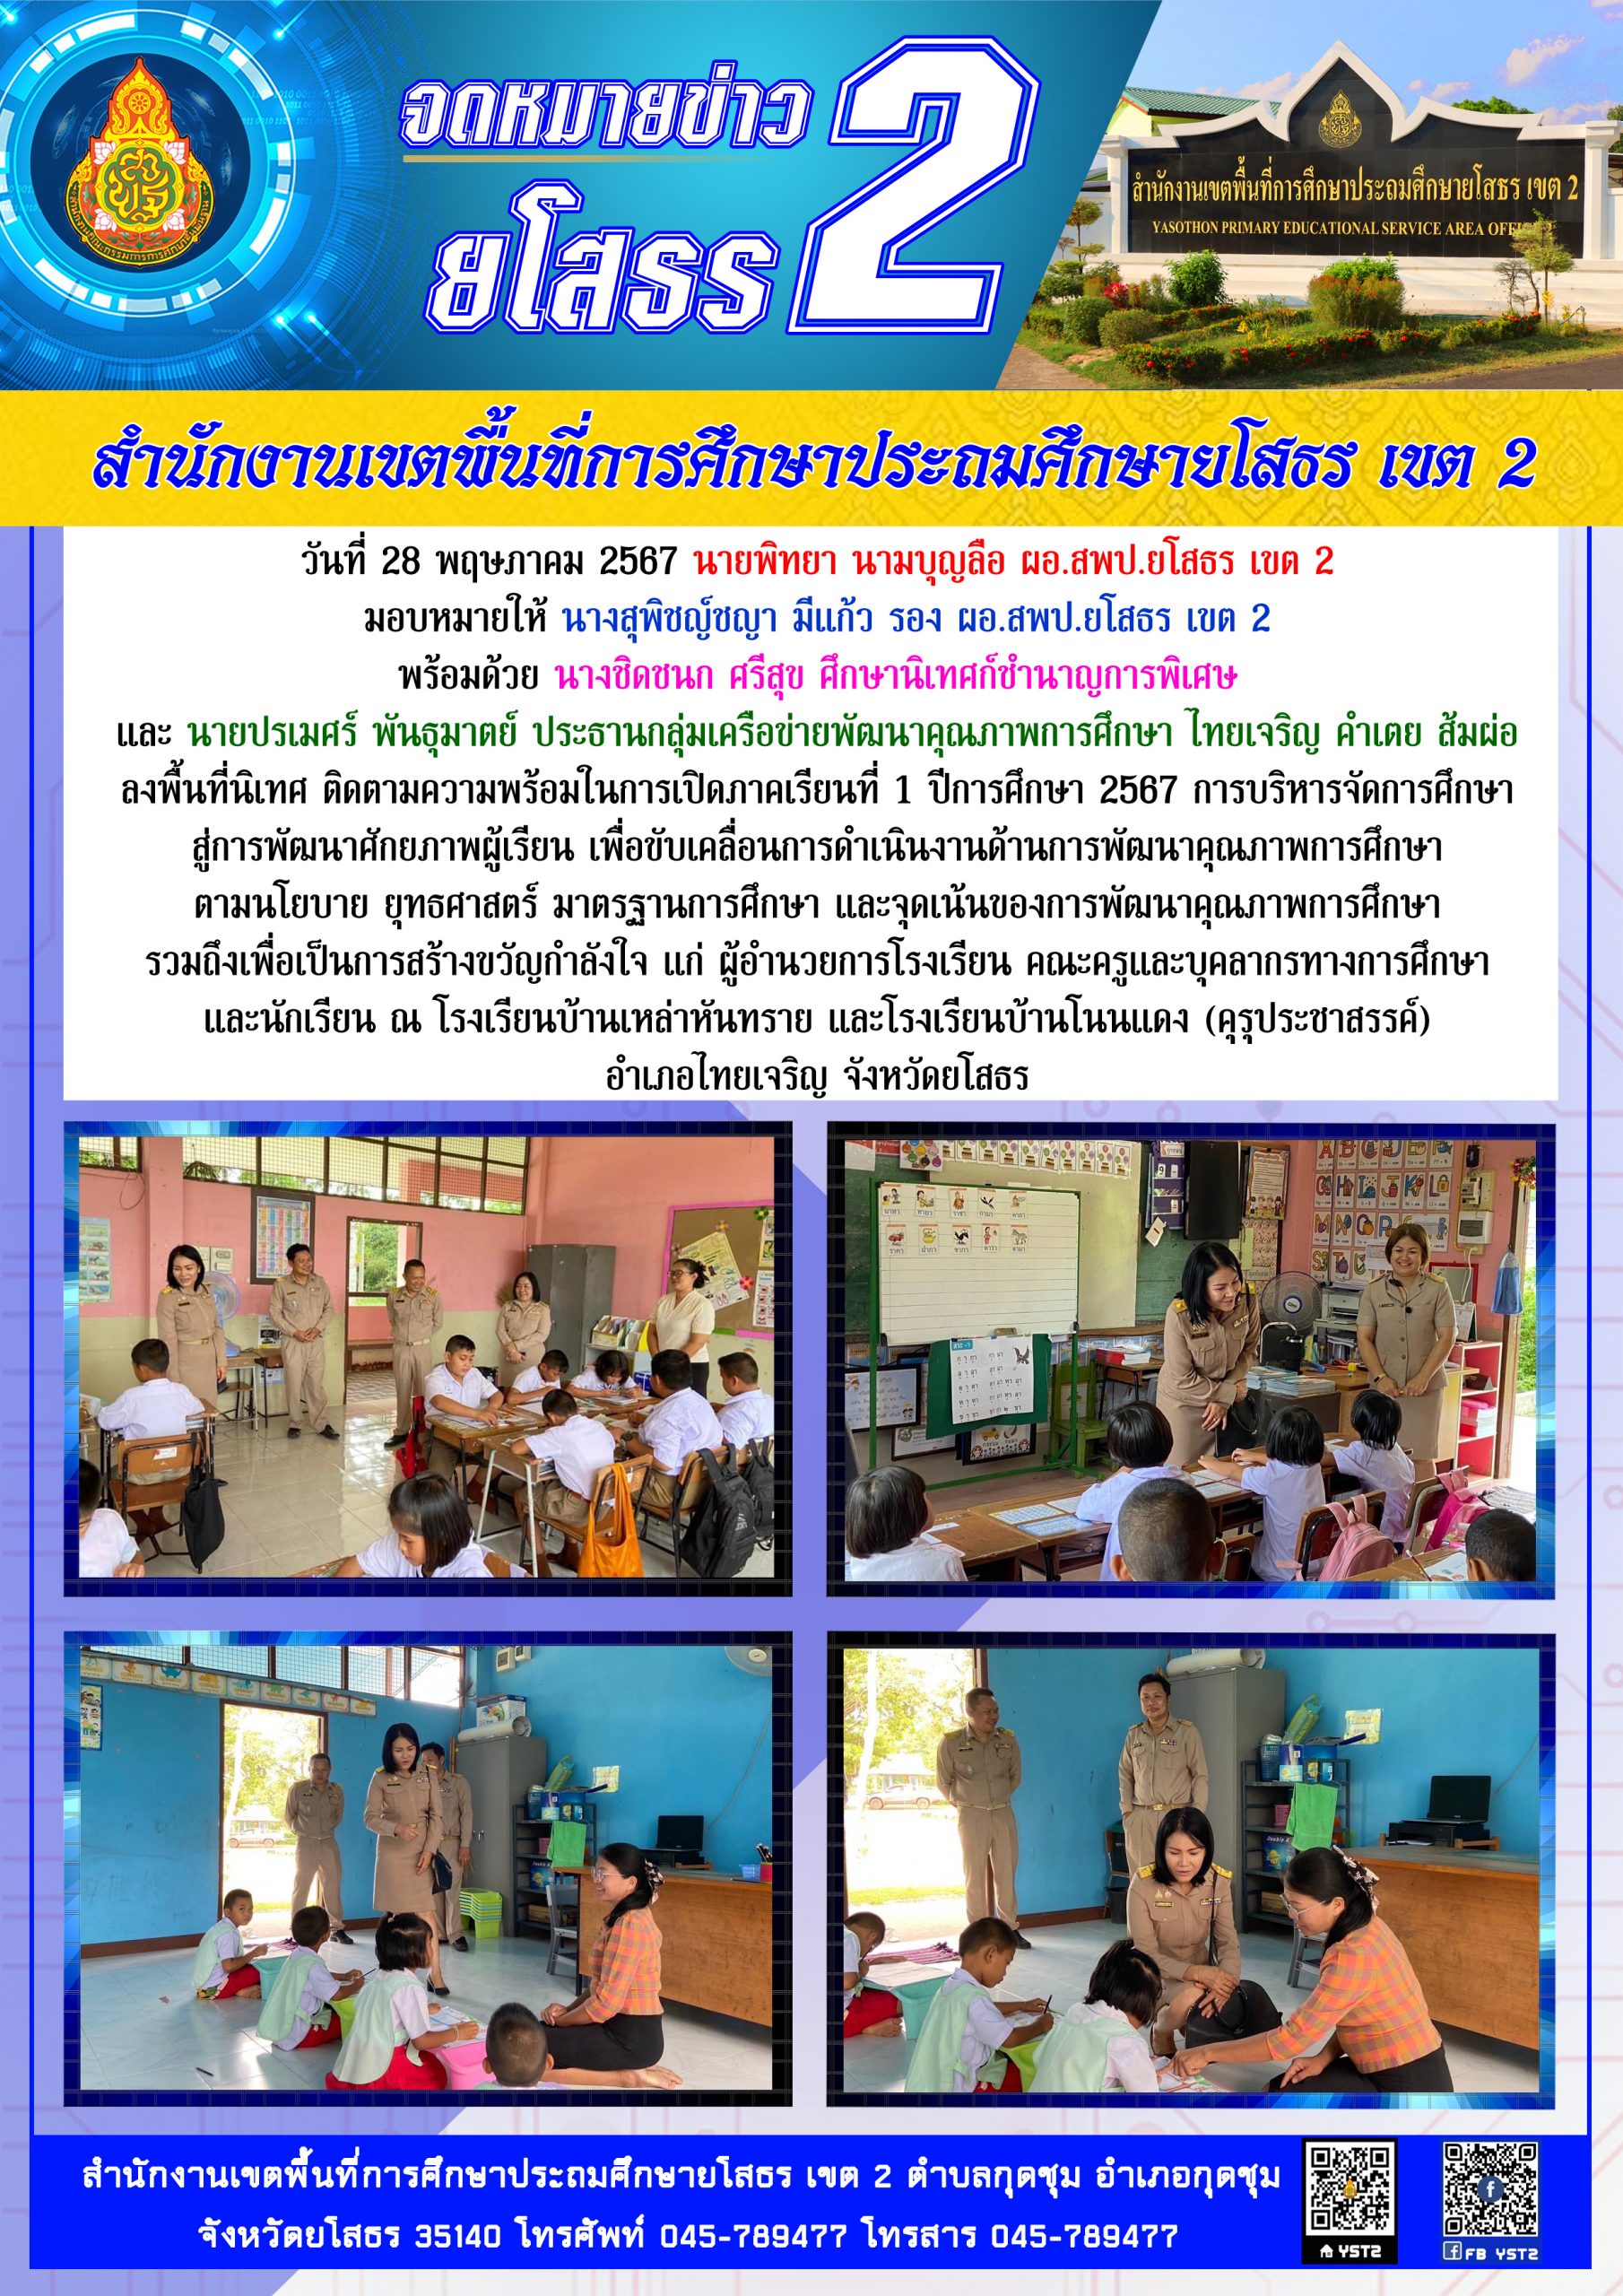 สพป.ยโสธร เขต 2 ลงพื้นที่นิเทศ ติดตามความพร้อมในการเปิดภาคเรียนที่ 1 ปีการศึกษา 2567 ณ โรงเรียนบ้านเหล่าหันทราย และโรงเรียนบ้านโนนแดง (คุรุประชาสรรค์)  อำเภอไทยเจริญ จังหวัดยโสธร